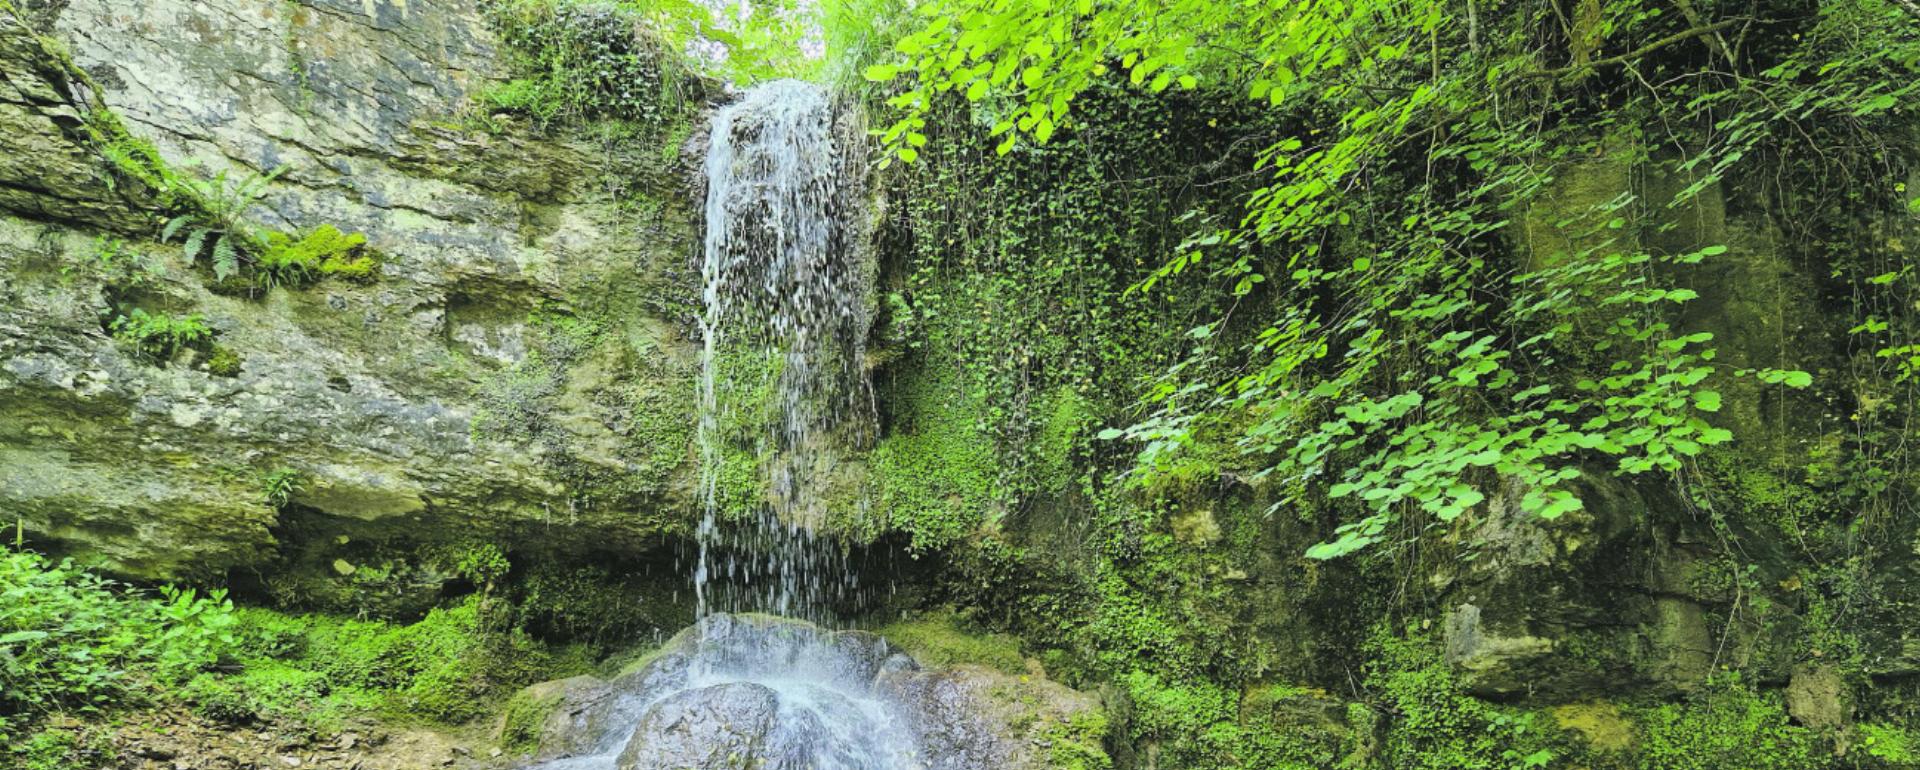 Eine Erfrischung am Wasserfall, lockt nicht nur im Sommer die Besucher an. Fotos: Bernadette Zaniolo